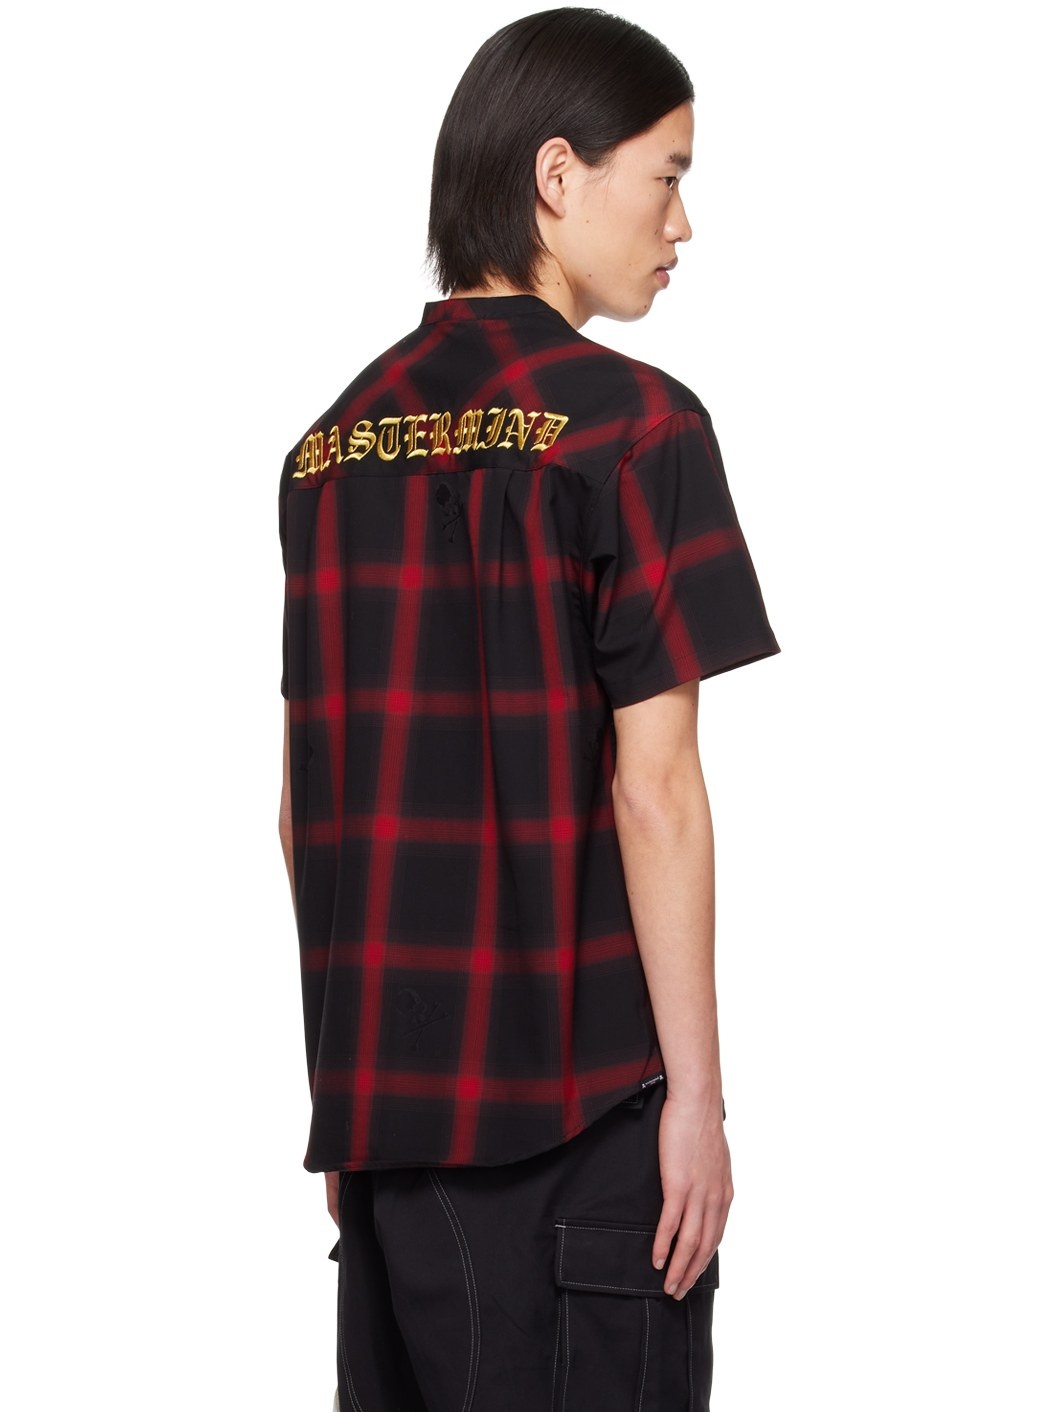 Black & Red Check T-Shirt - 3